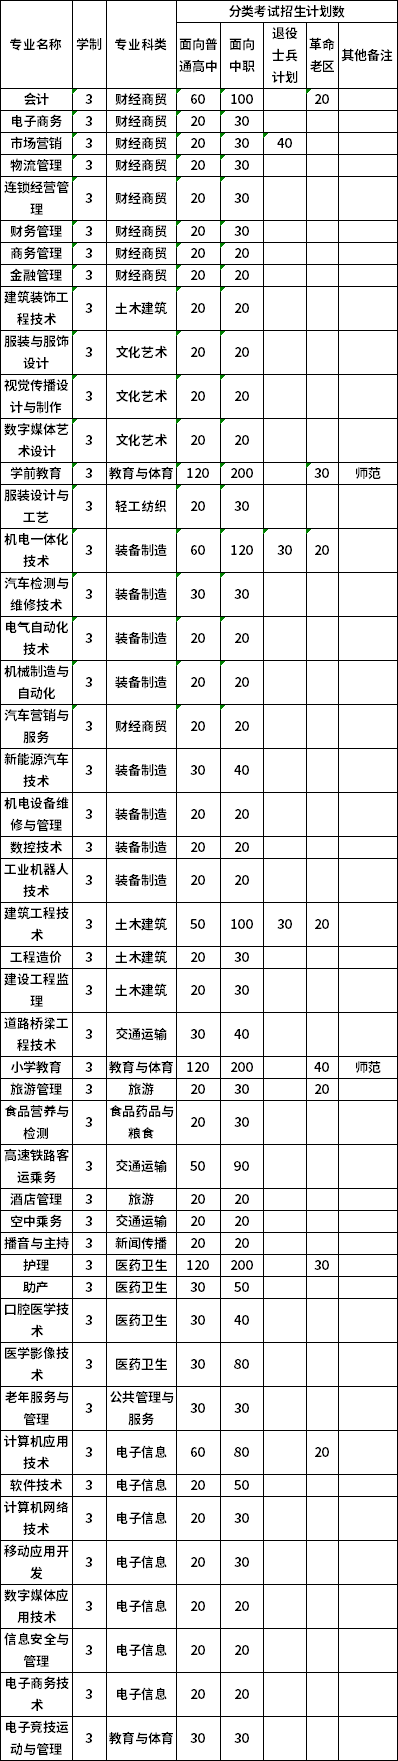 淮北职业技术学院2020年分类考试招生计划